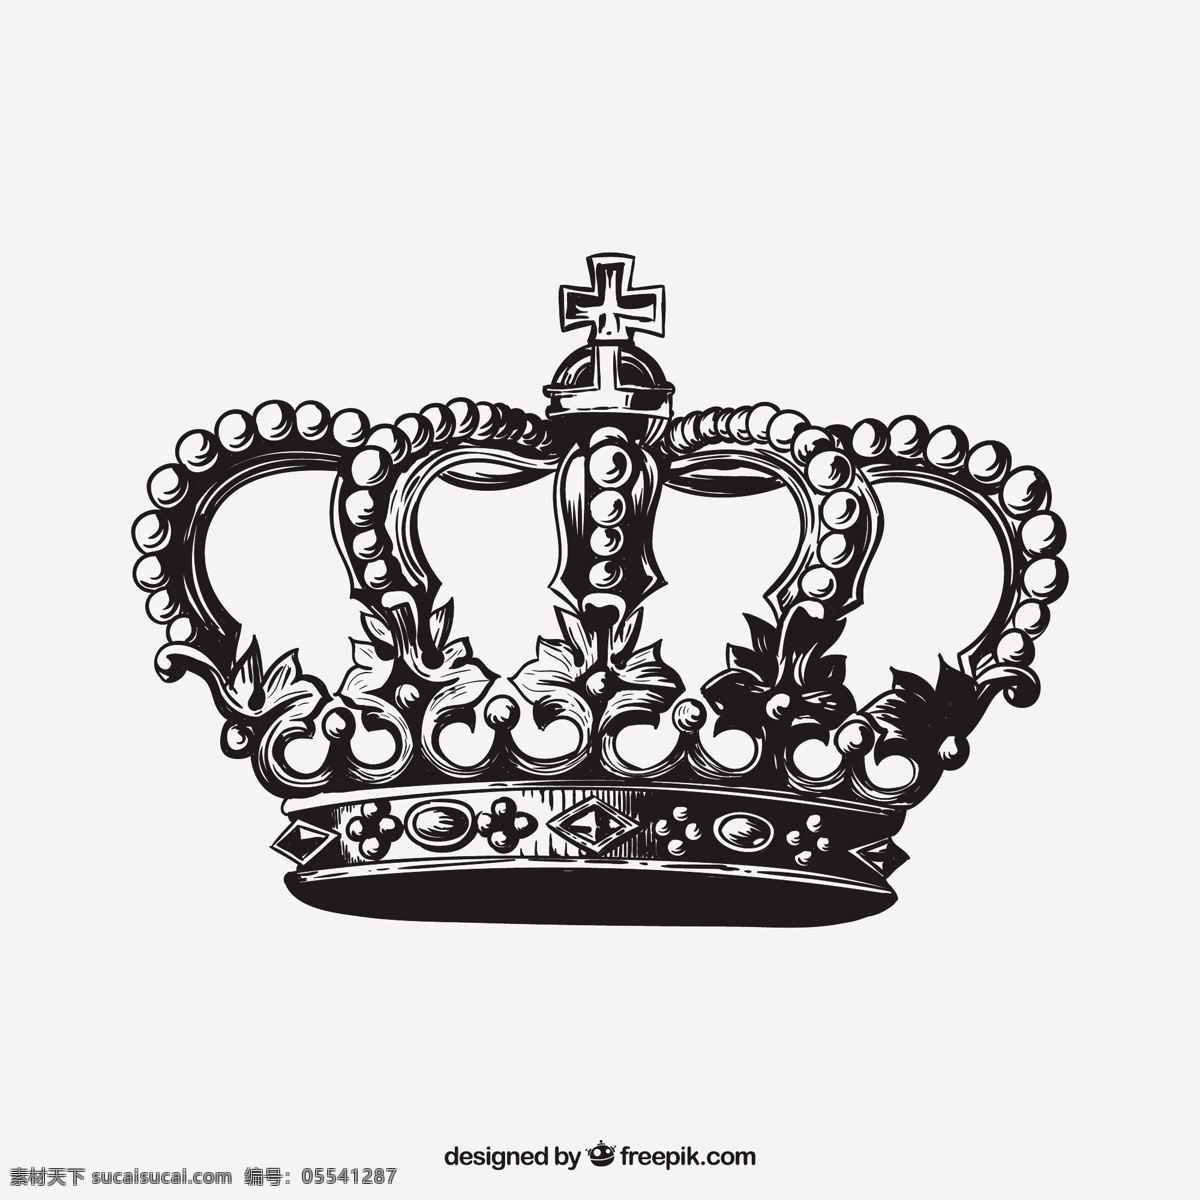 手绘古董皇冠 一方面 皇冠 饰品 手工绘制 绘制 国王 王后 手绘画 古董 珠宝 王冠王国 粗略的绘制 白色